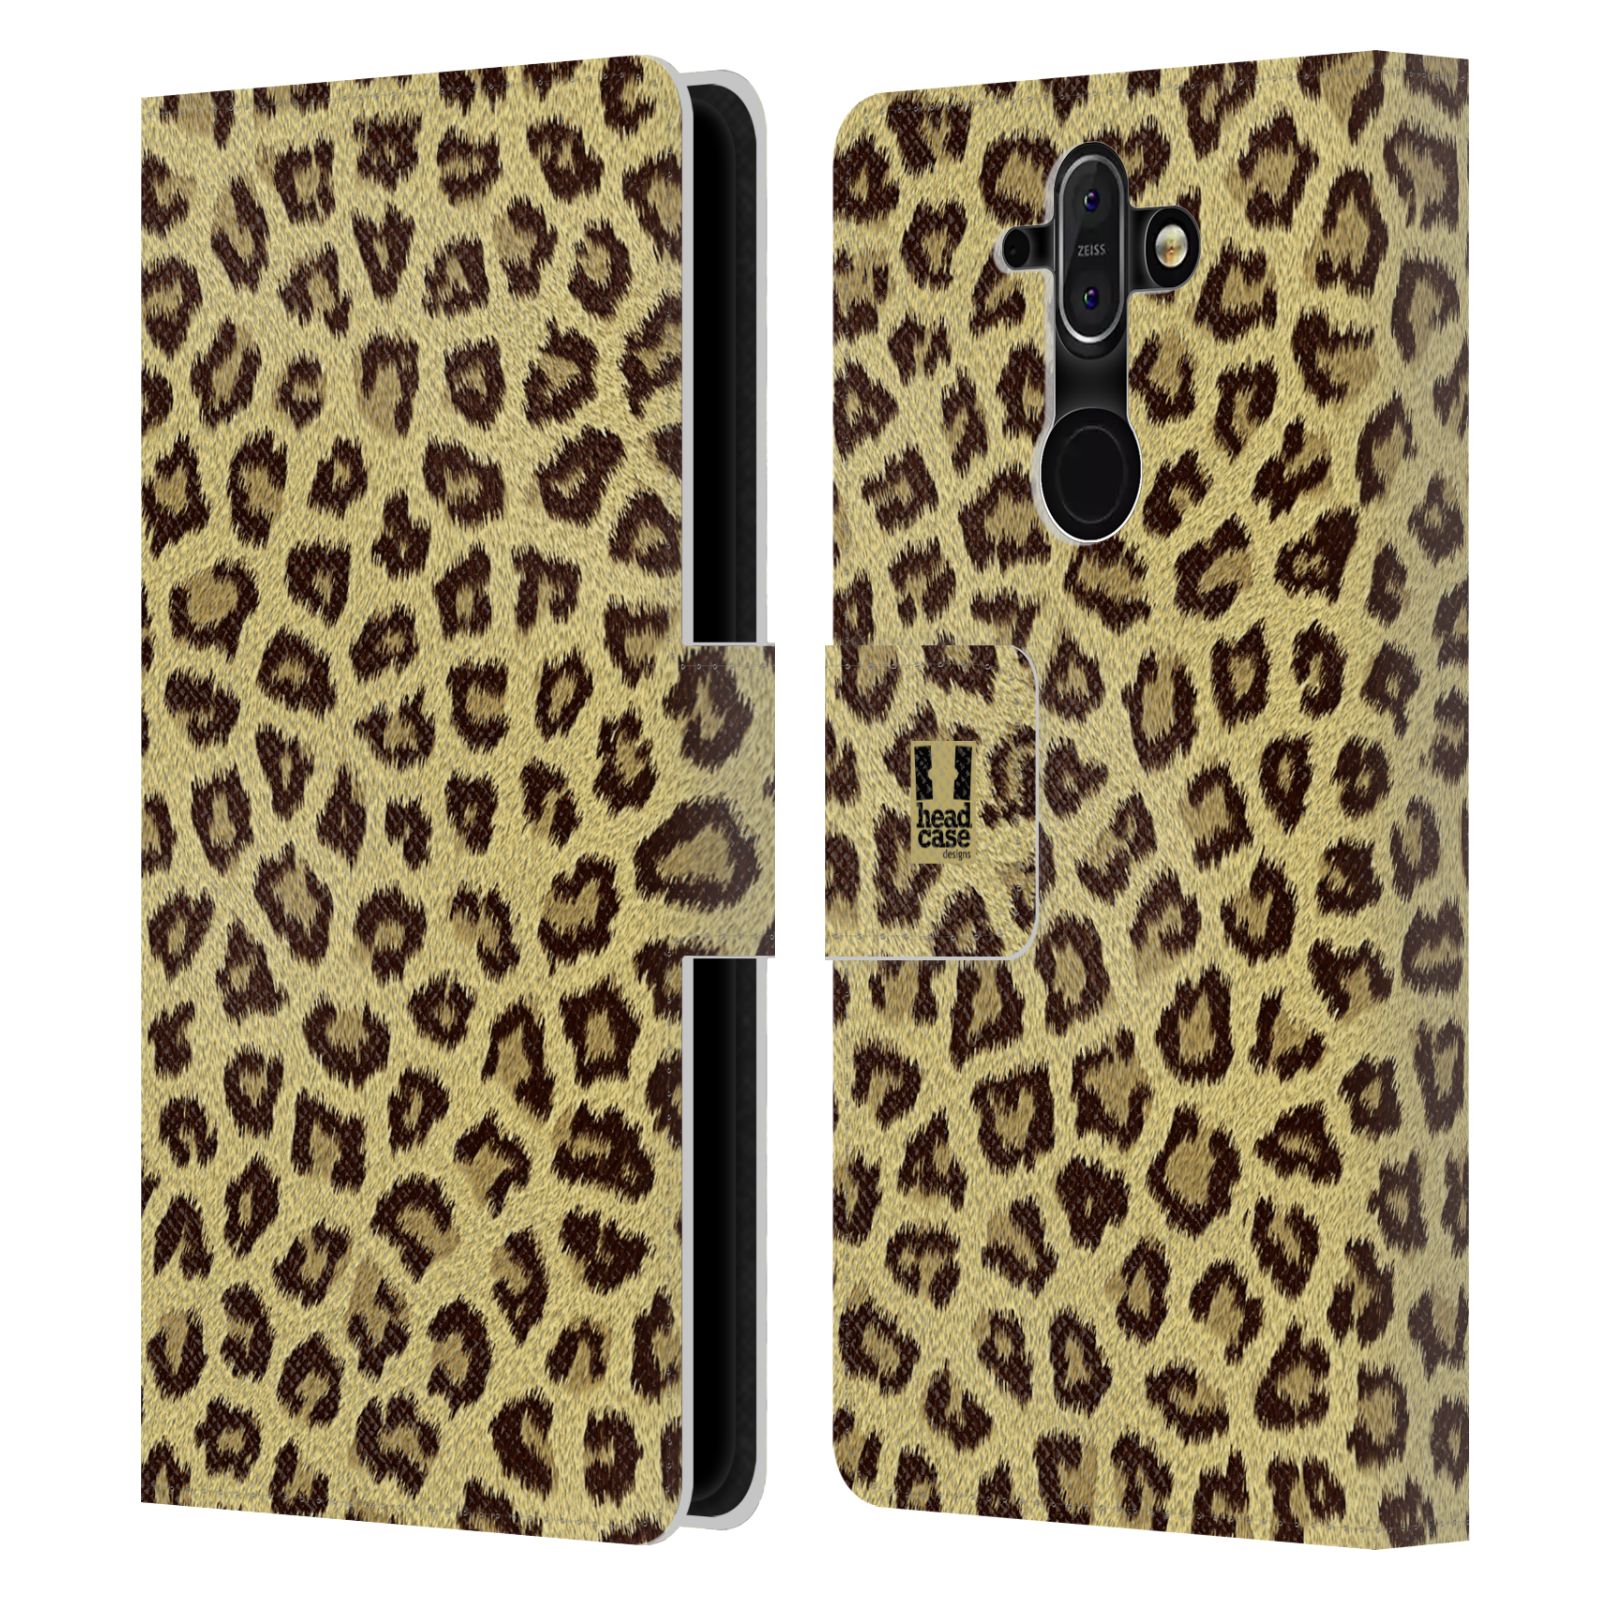 HEAD CASE Flipové pouzdro pro mobil Nokia 8 SIROCCO zvíře srst divoká kolekce jaguár, gepard